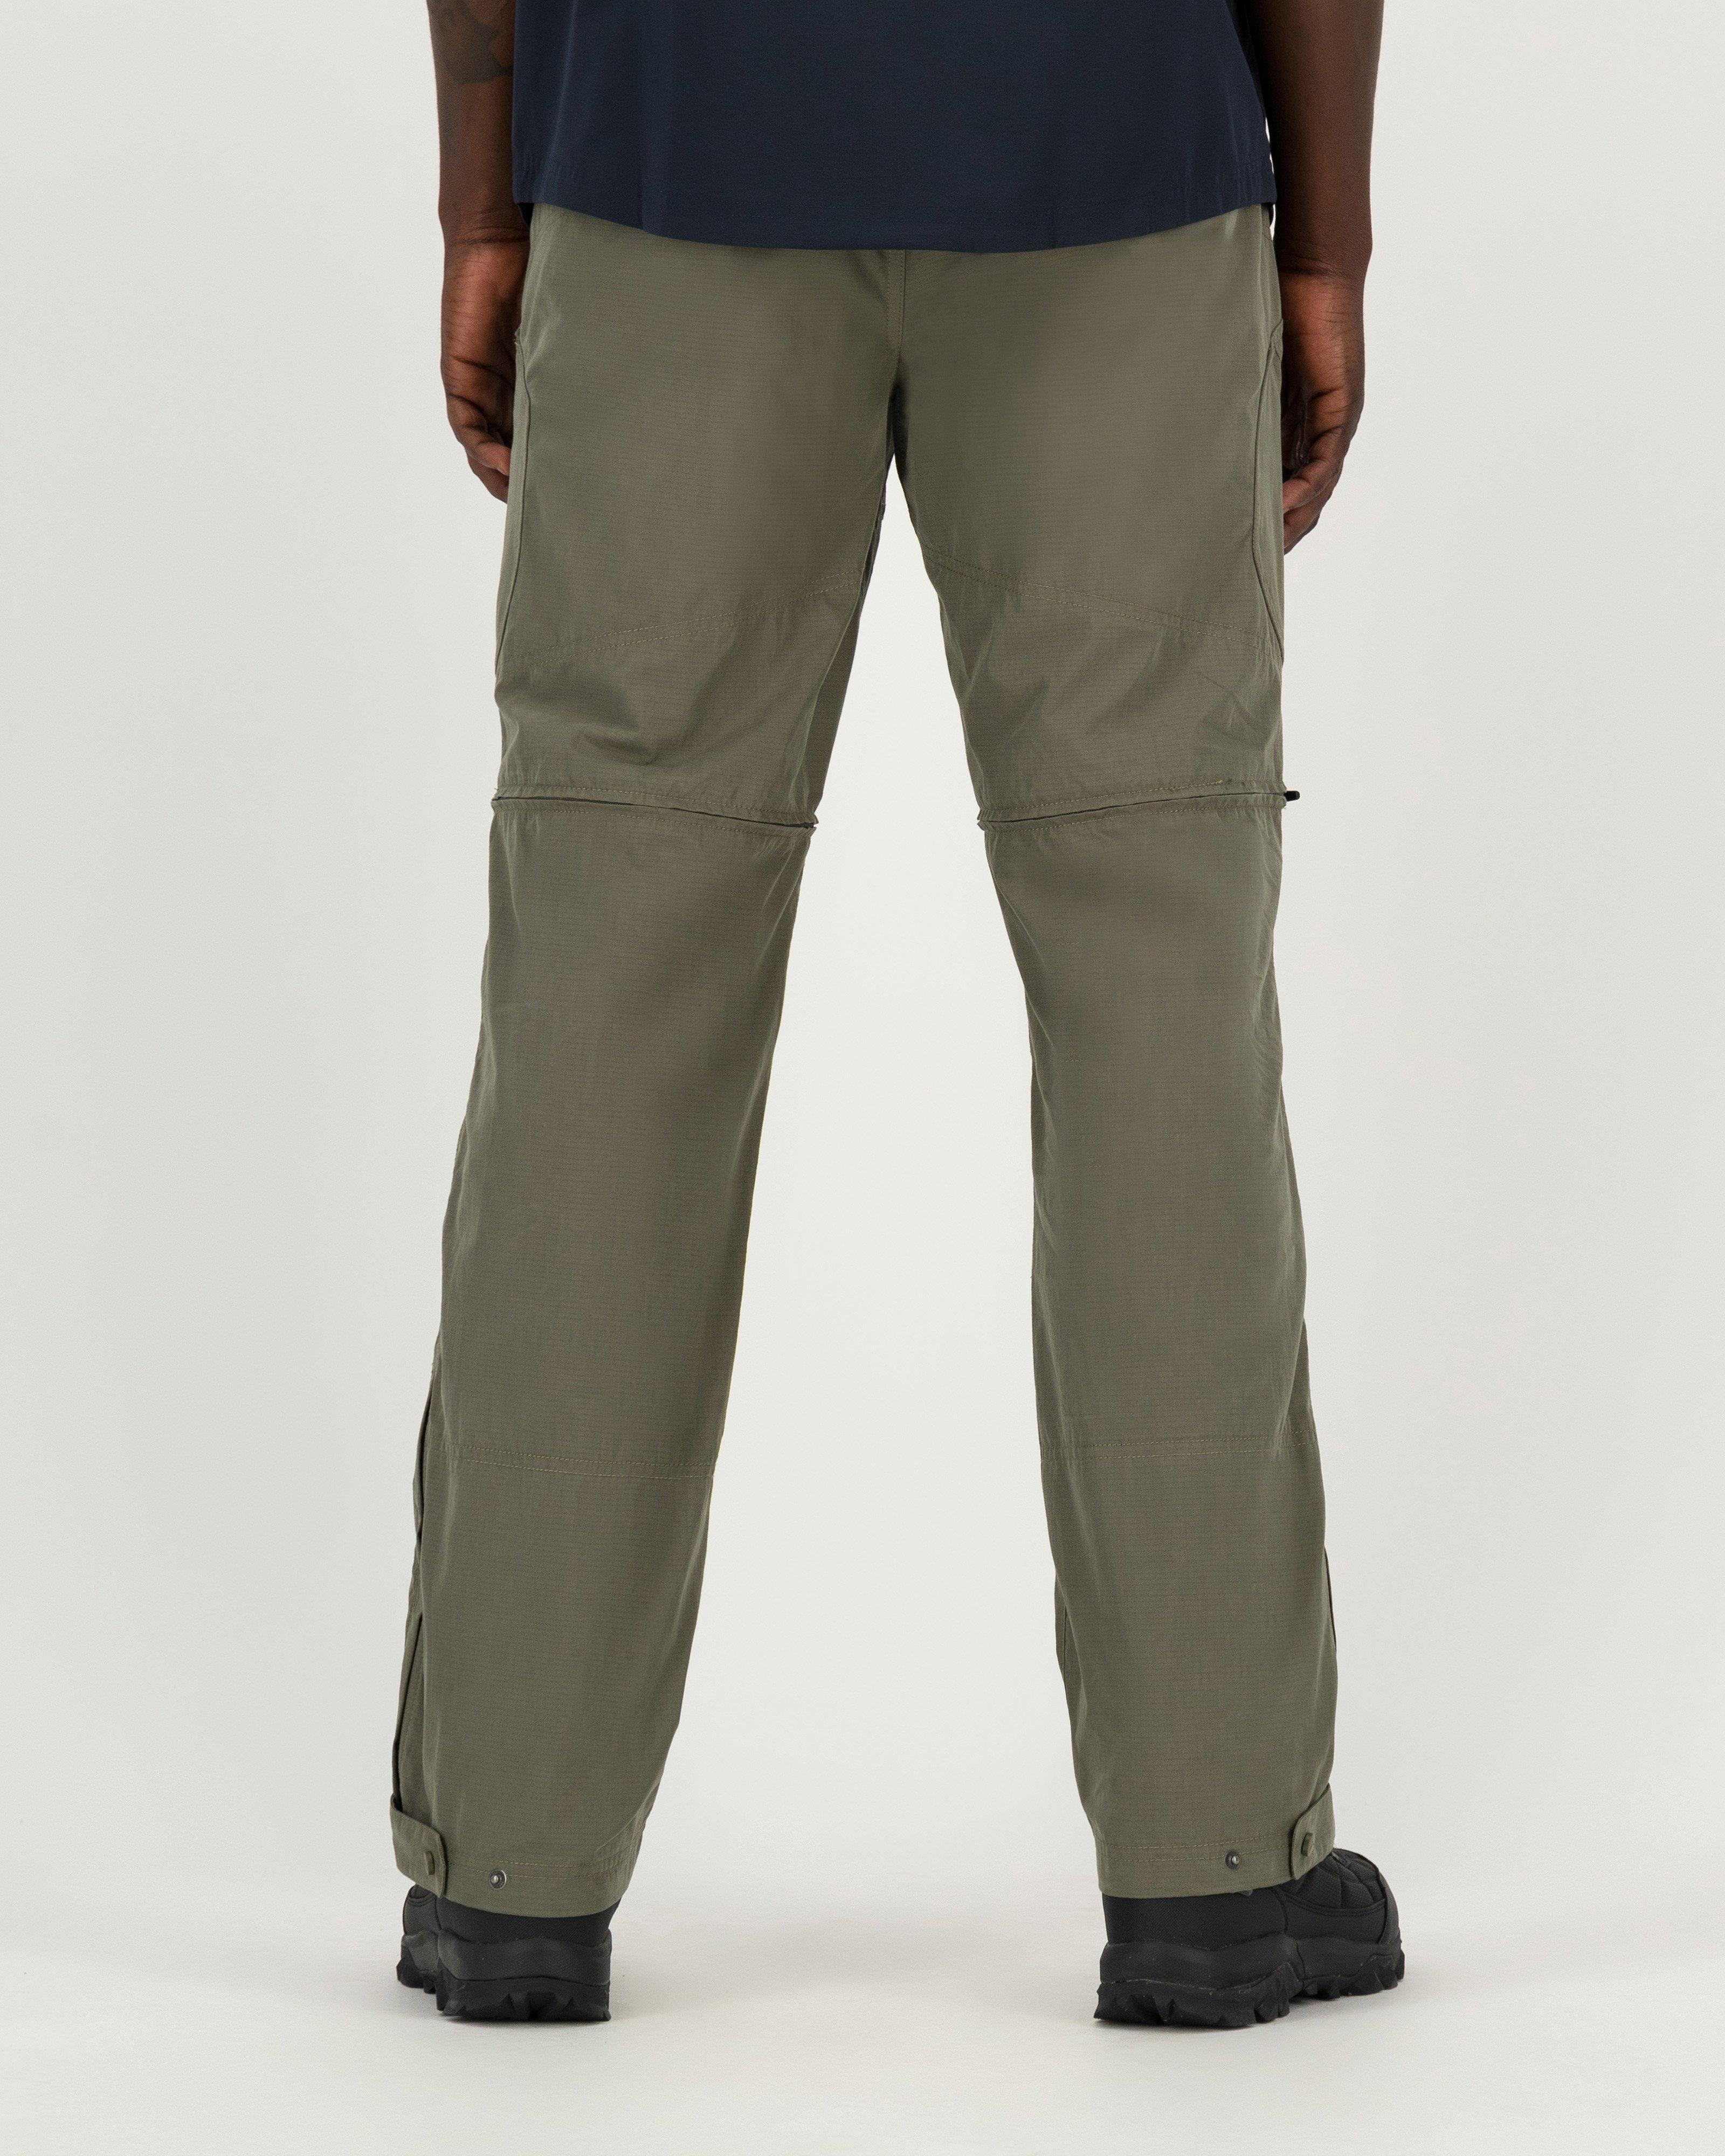 Vriendin Productie aluminium K-Way Men's Explorer Gorge 2.0 Trousers | Cape Union Mart